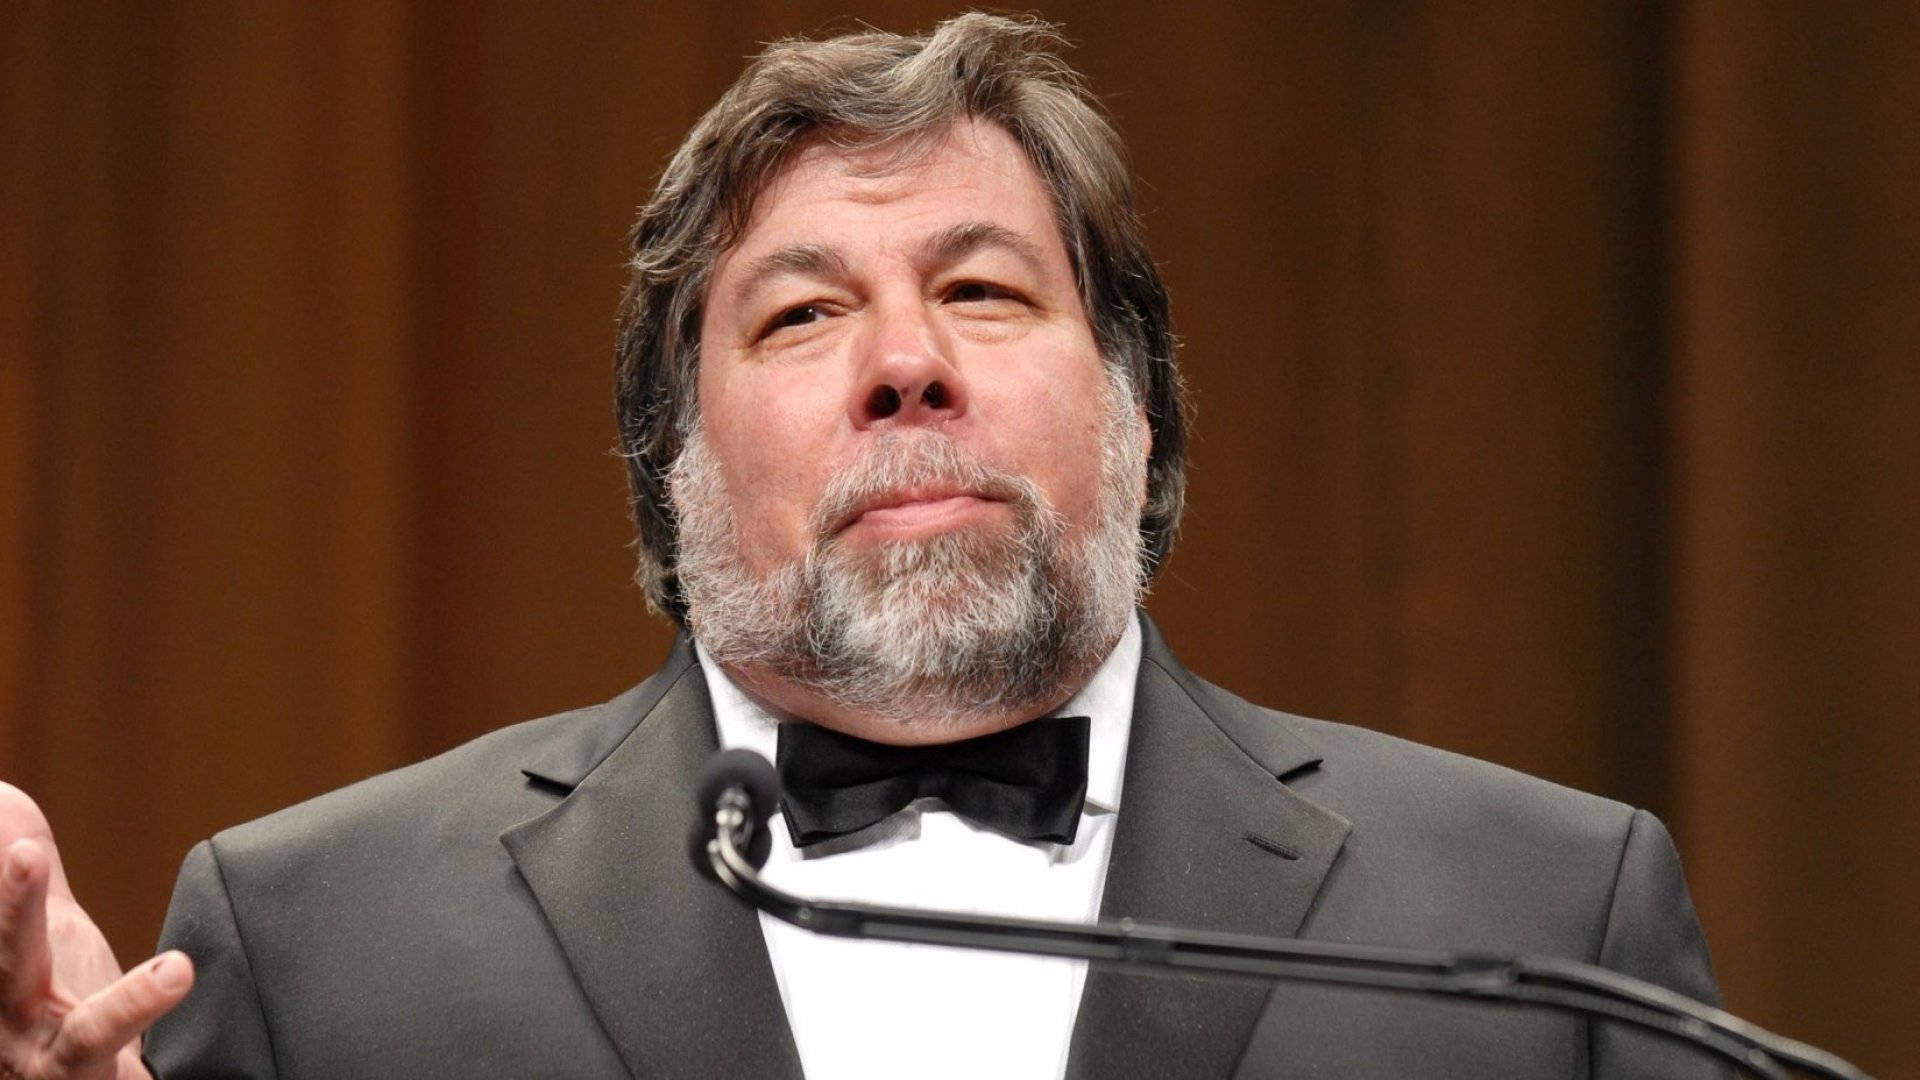 Co Founder Of Apple Steve Wozniak On Speech Wallpaper